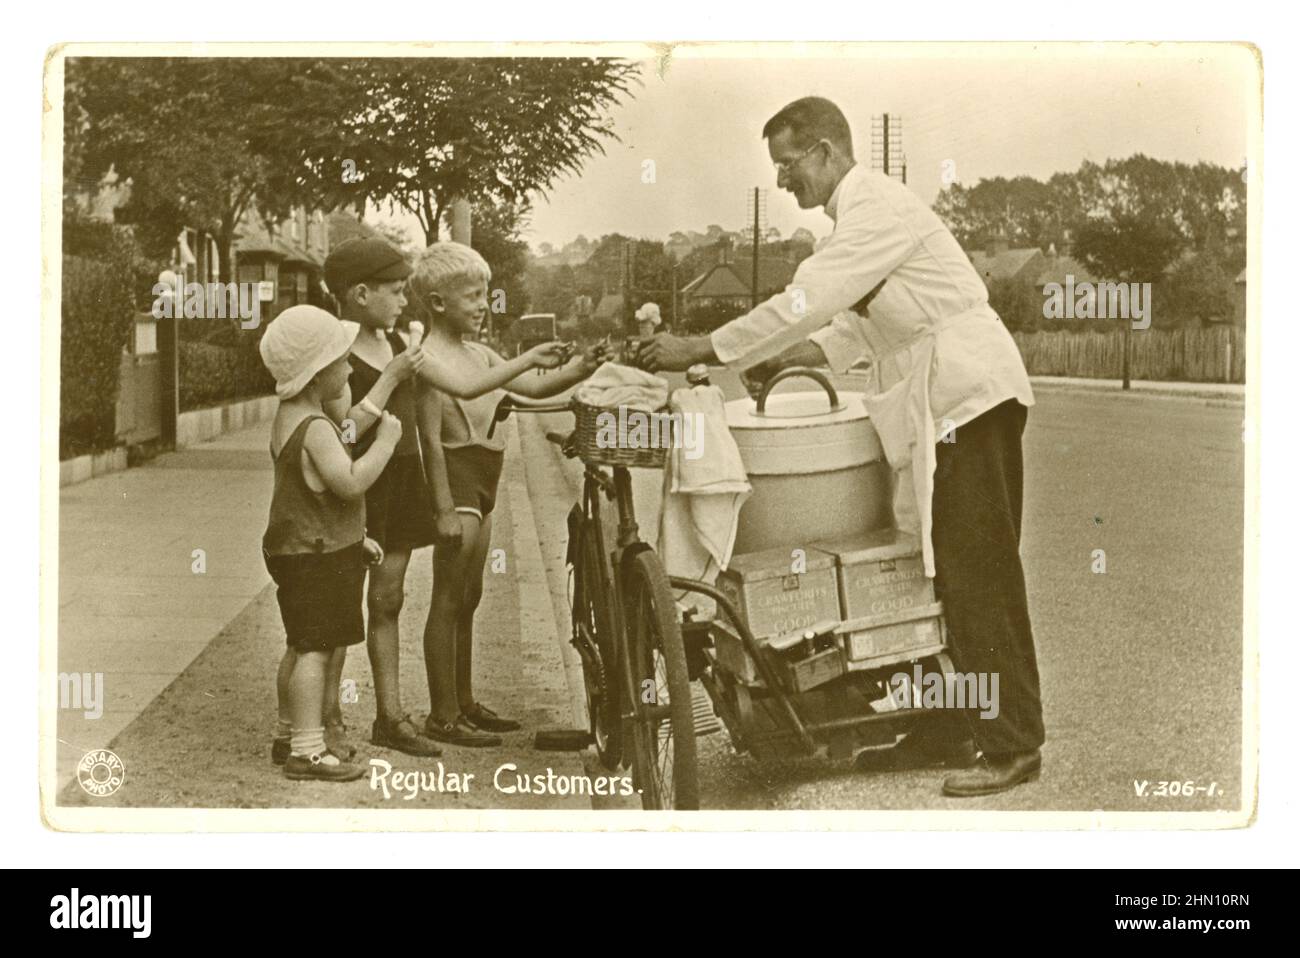 Carte postale originale, archivistique et charmante du début des années 1920, représentant 3 jeunes garçons qui achètent des cônes de crème glacée (cornet cornets), d'un vendeur de crème glacée qui vend des glaces à vélo, dans une rue anglaise suburbaine le jour d'été, des boîtes de wafers de Crawford au dos, vers 1920, au Royaume-Uni Banque D'Images